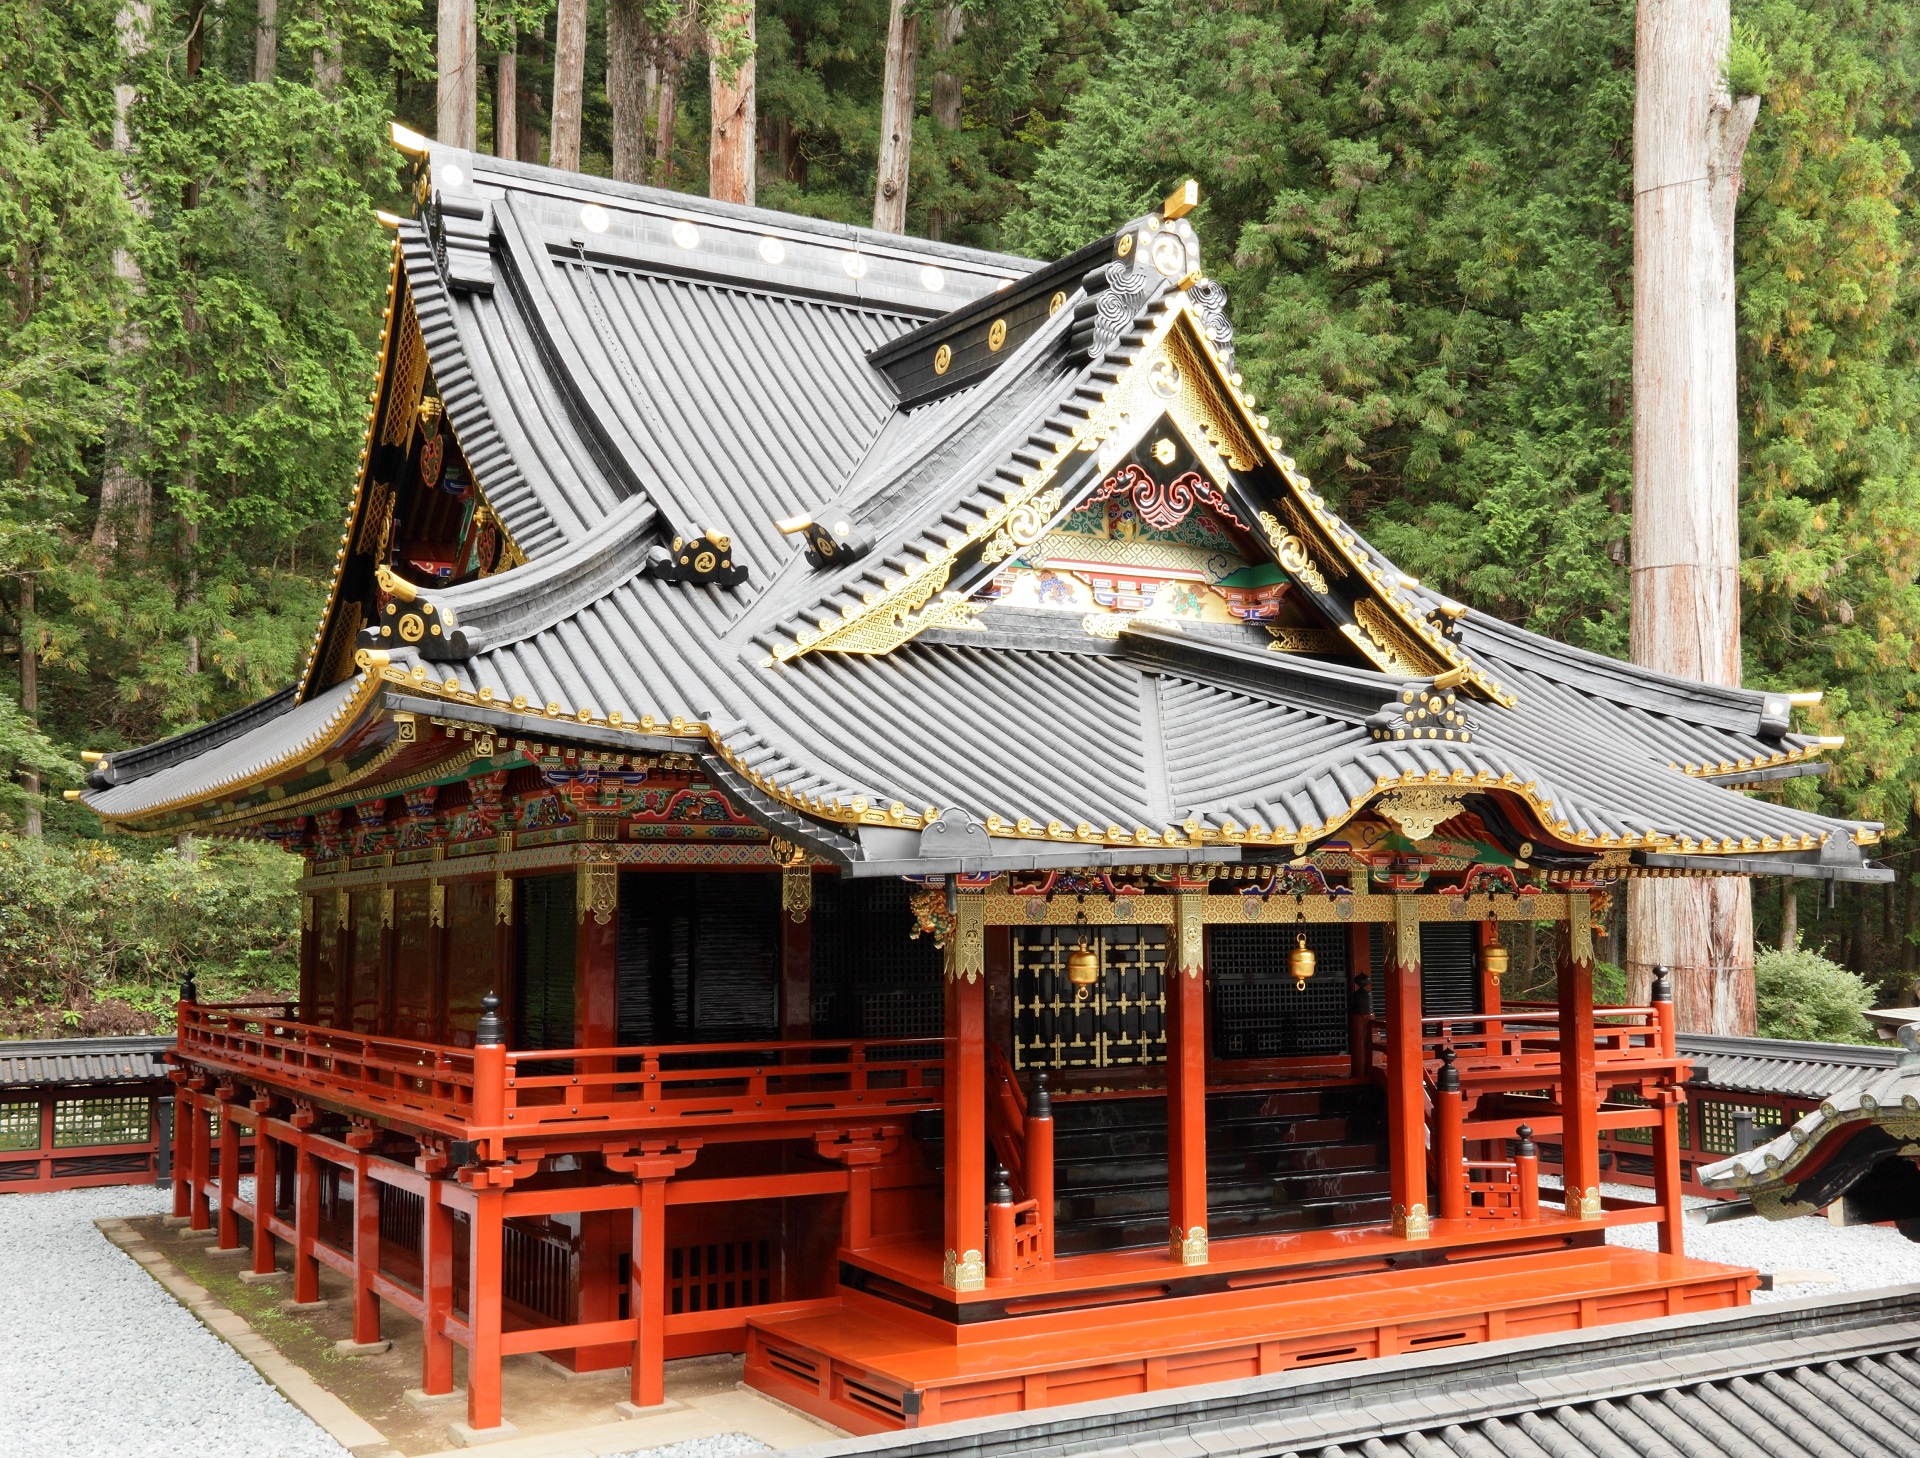 日光二荒山神社にある朱塗りで屋根の軒下が金色の大国殿を写した写真